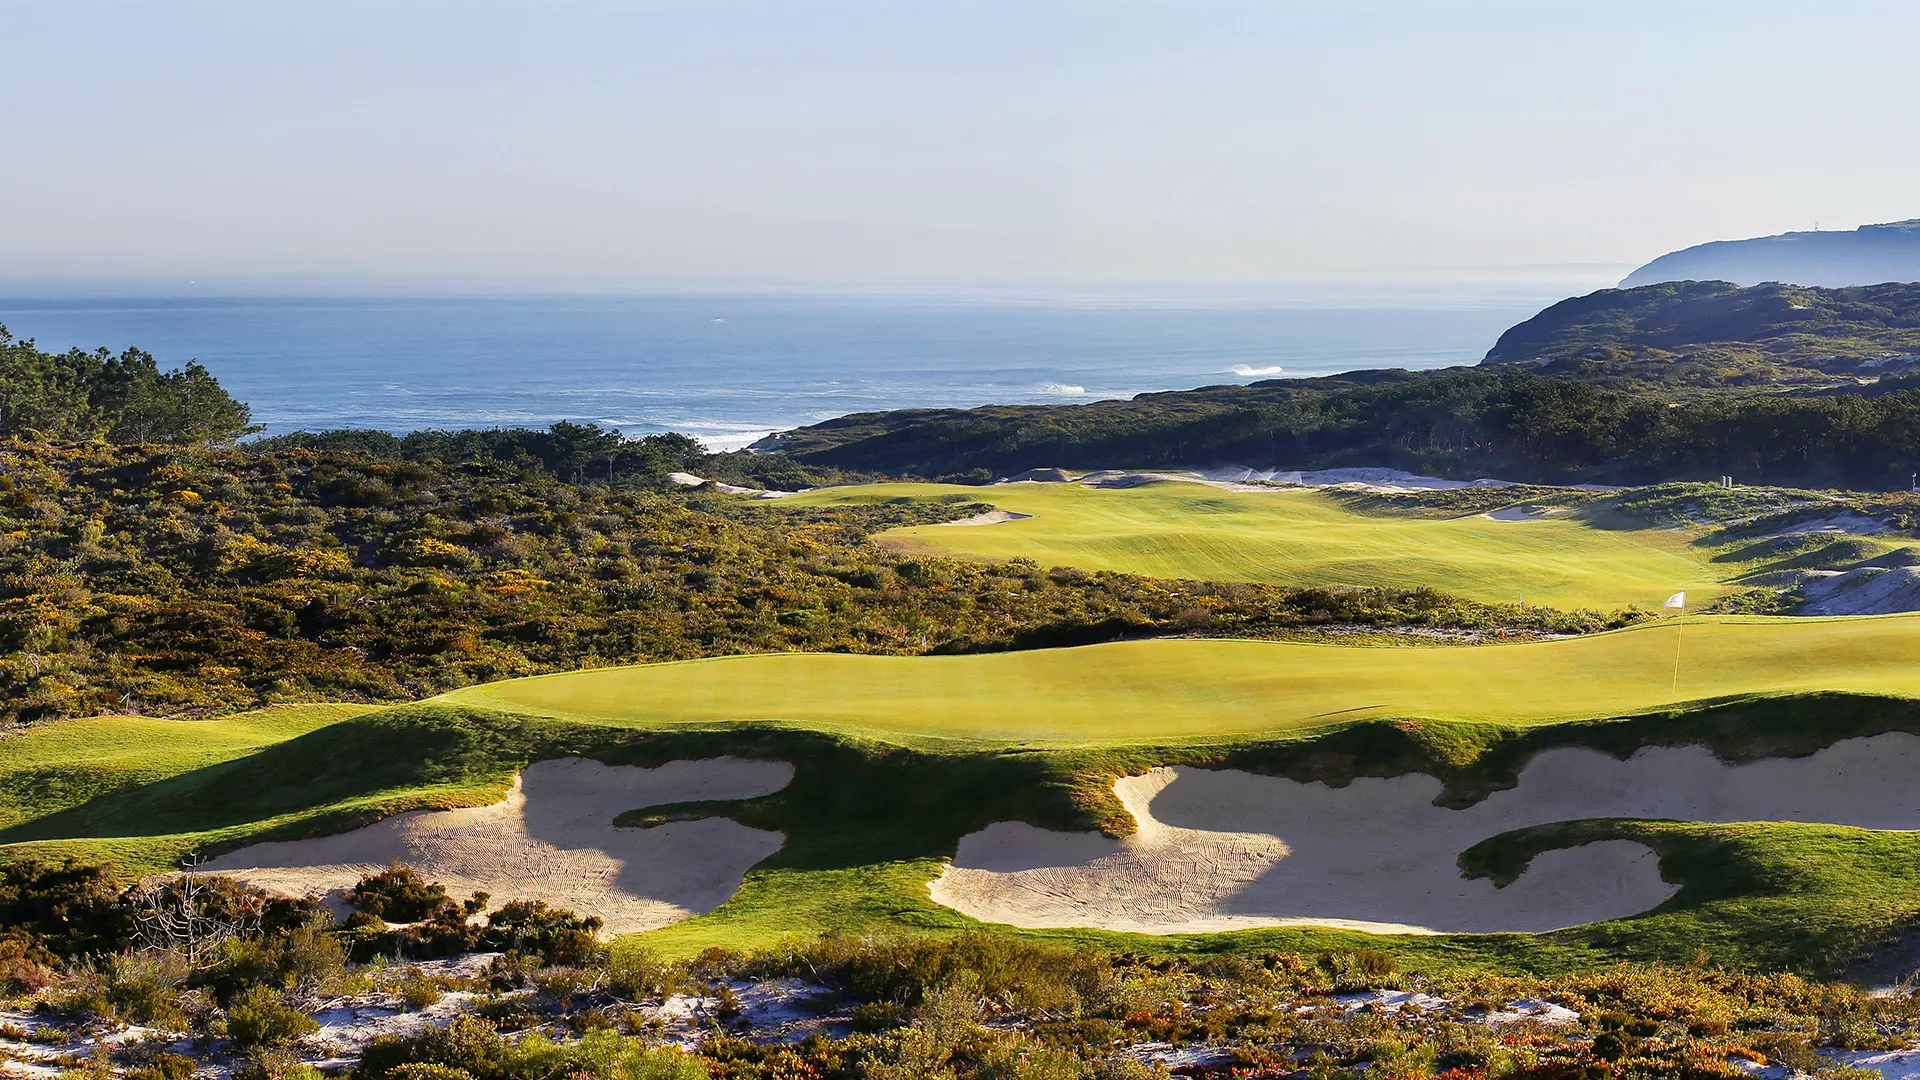 Portugal golf holidays - Club de Golf Quinta da Marinha in Cascais Lisbon - Photo 2